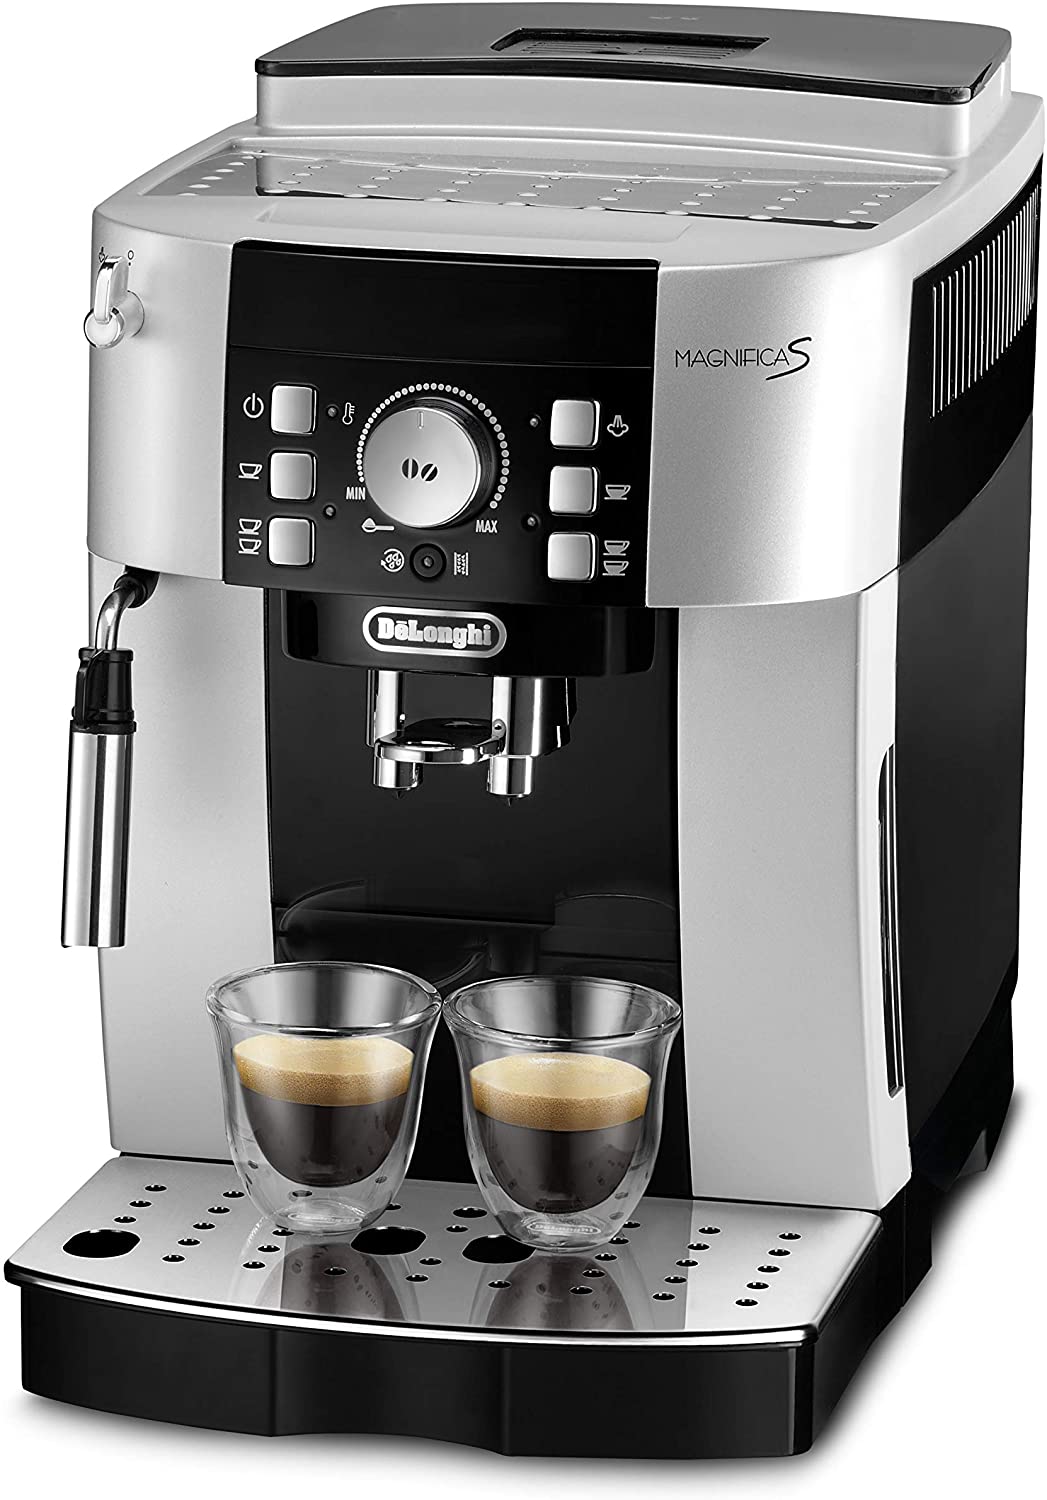 De’Longhi DeLonghi ECAM 21.116.B Coffee Machine Magnifica S (steam nozzle), Coffee machine